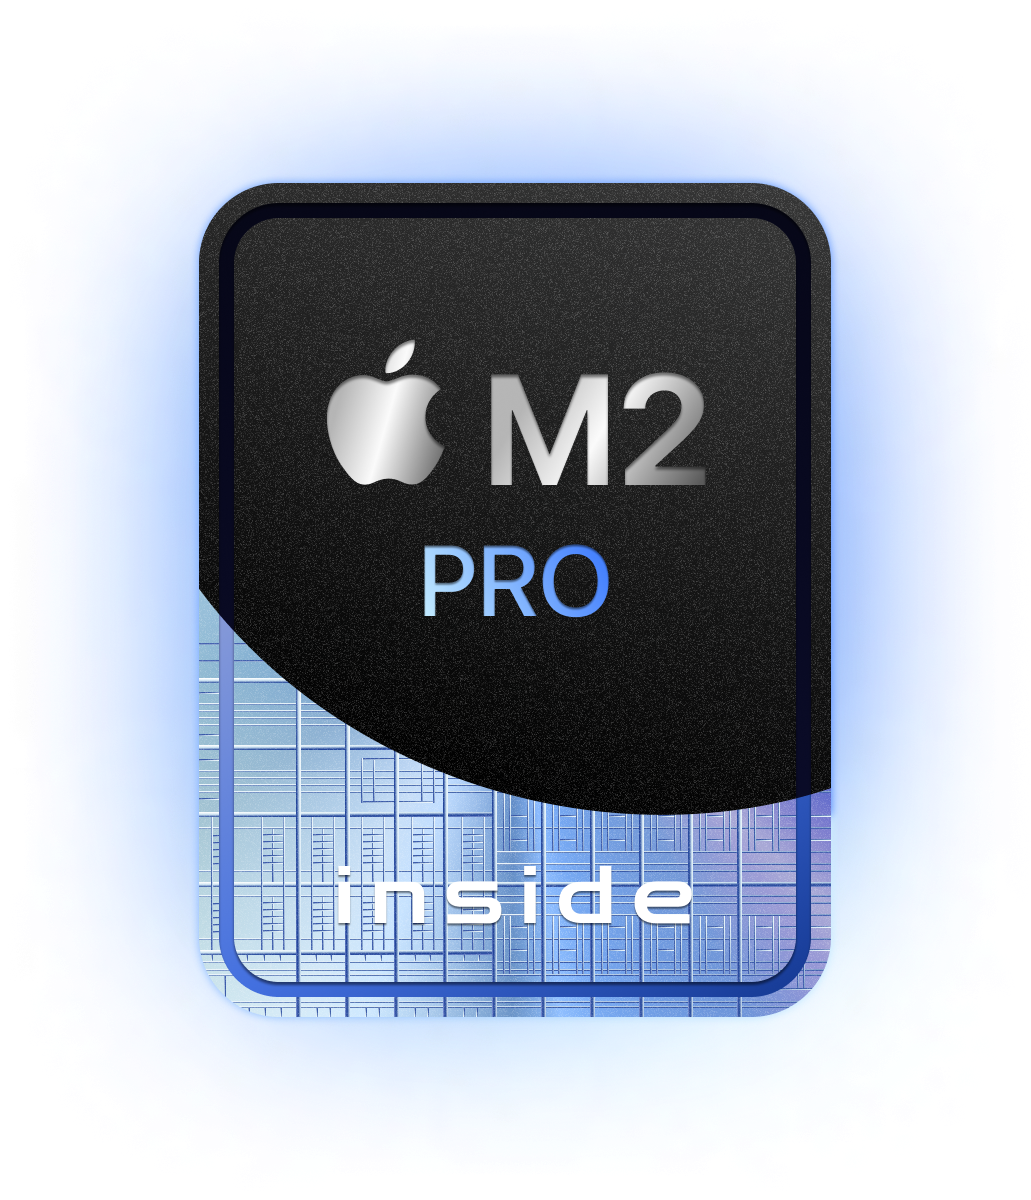 M2 Pro